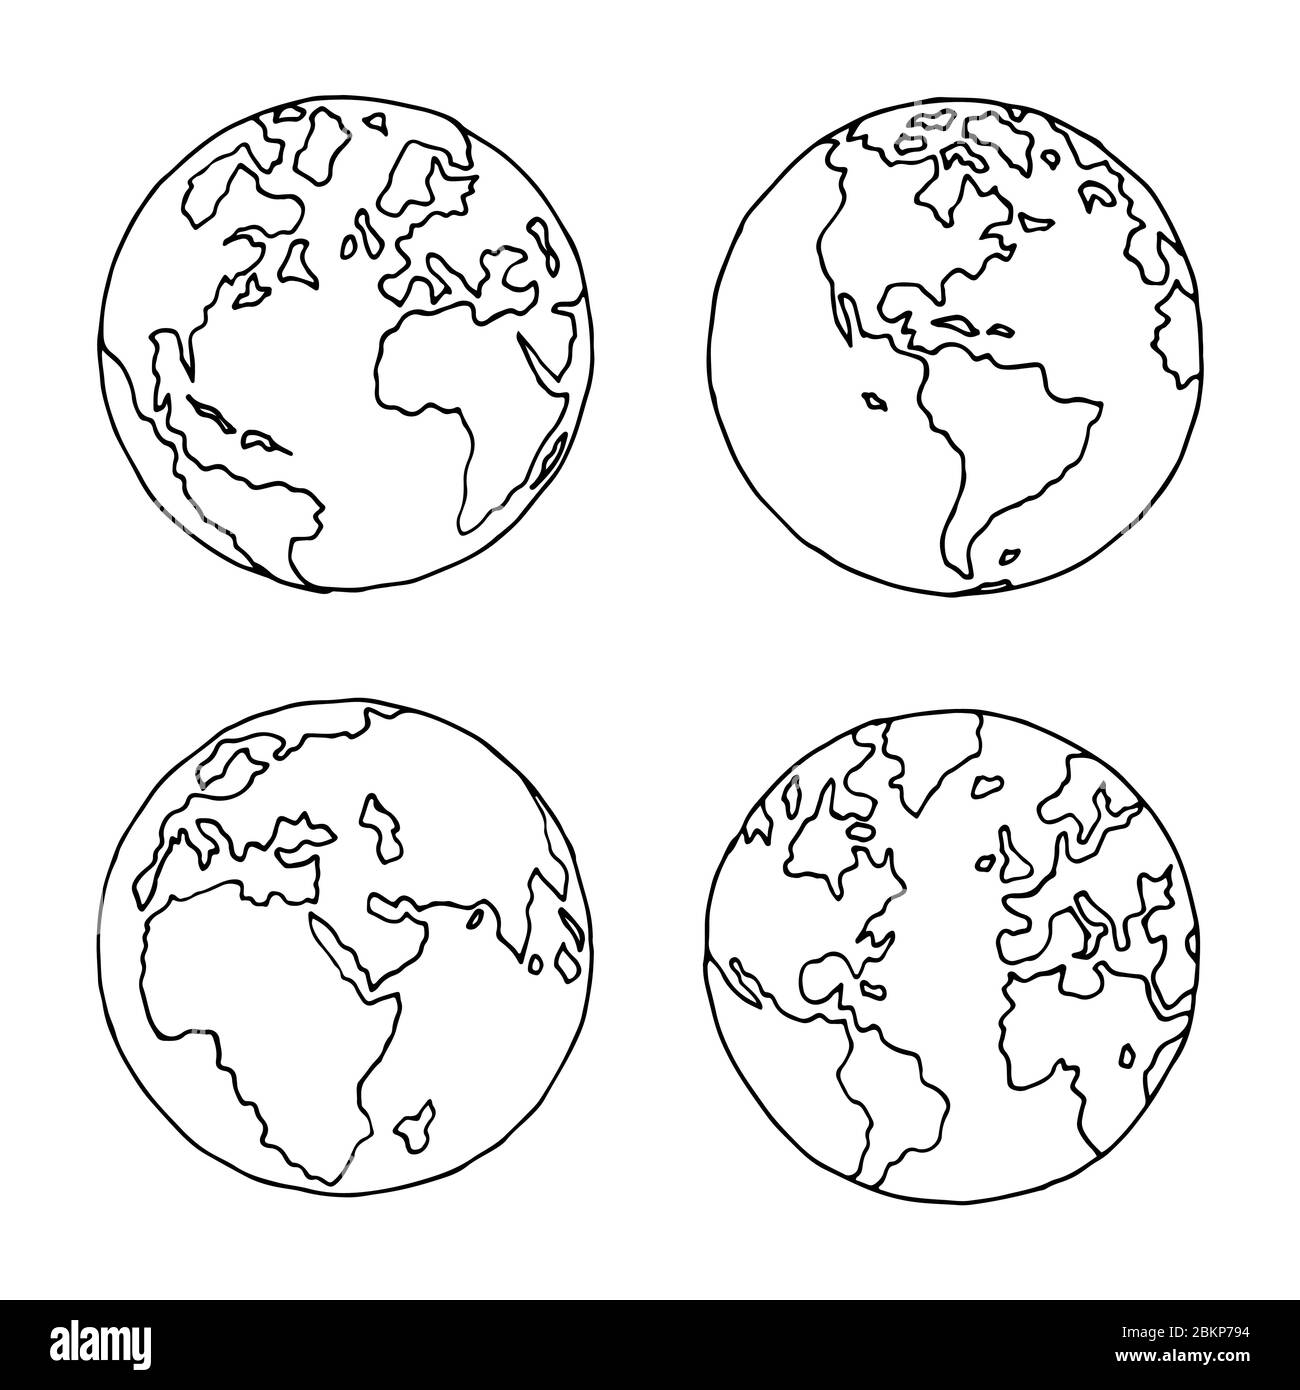 Handgezeichnete Kugel in vier Projektionen. Westliche und östliche, nördliche und südliche Hemisphären. Nicht gerade präzise Skizze der Weltkarte in schwarz und Stock Vektor